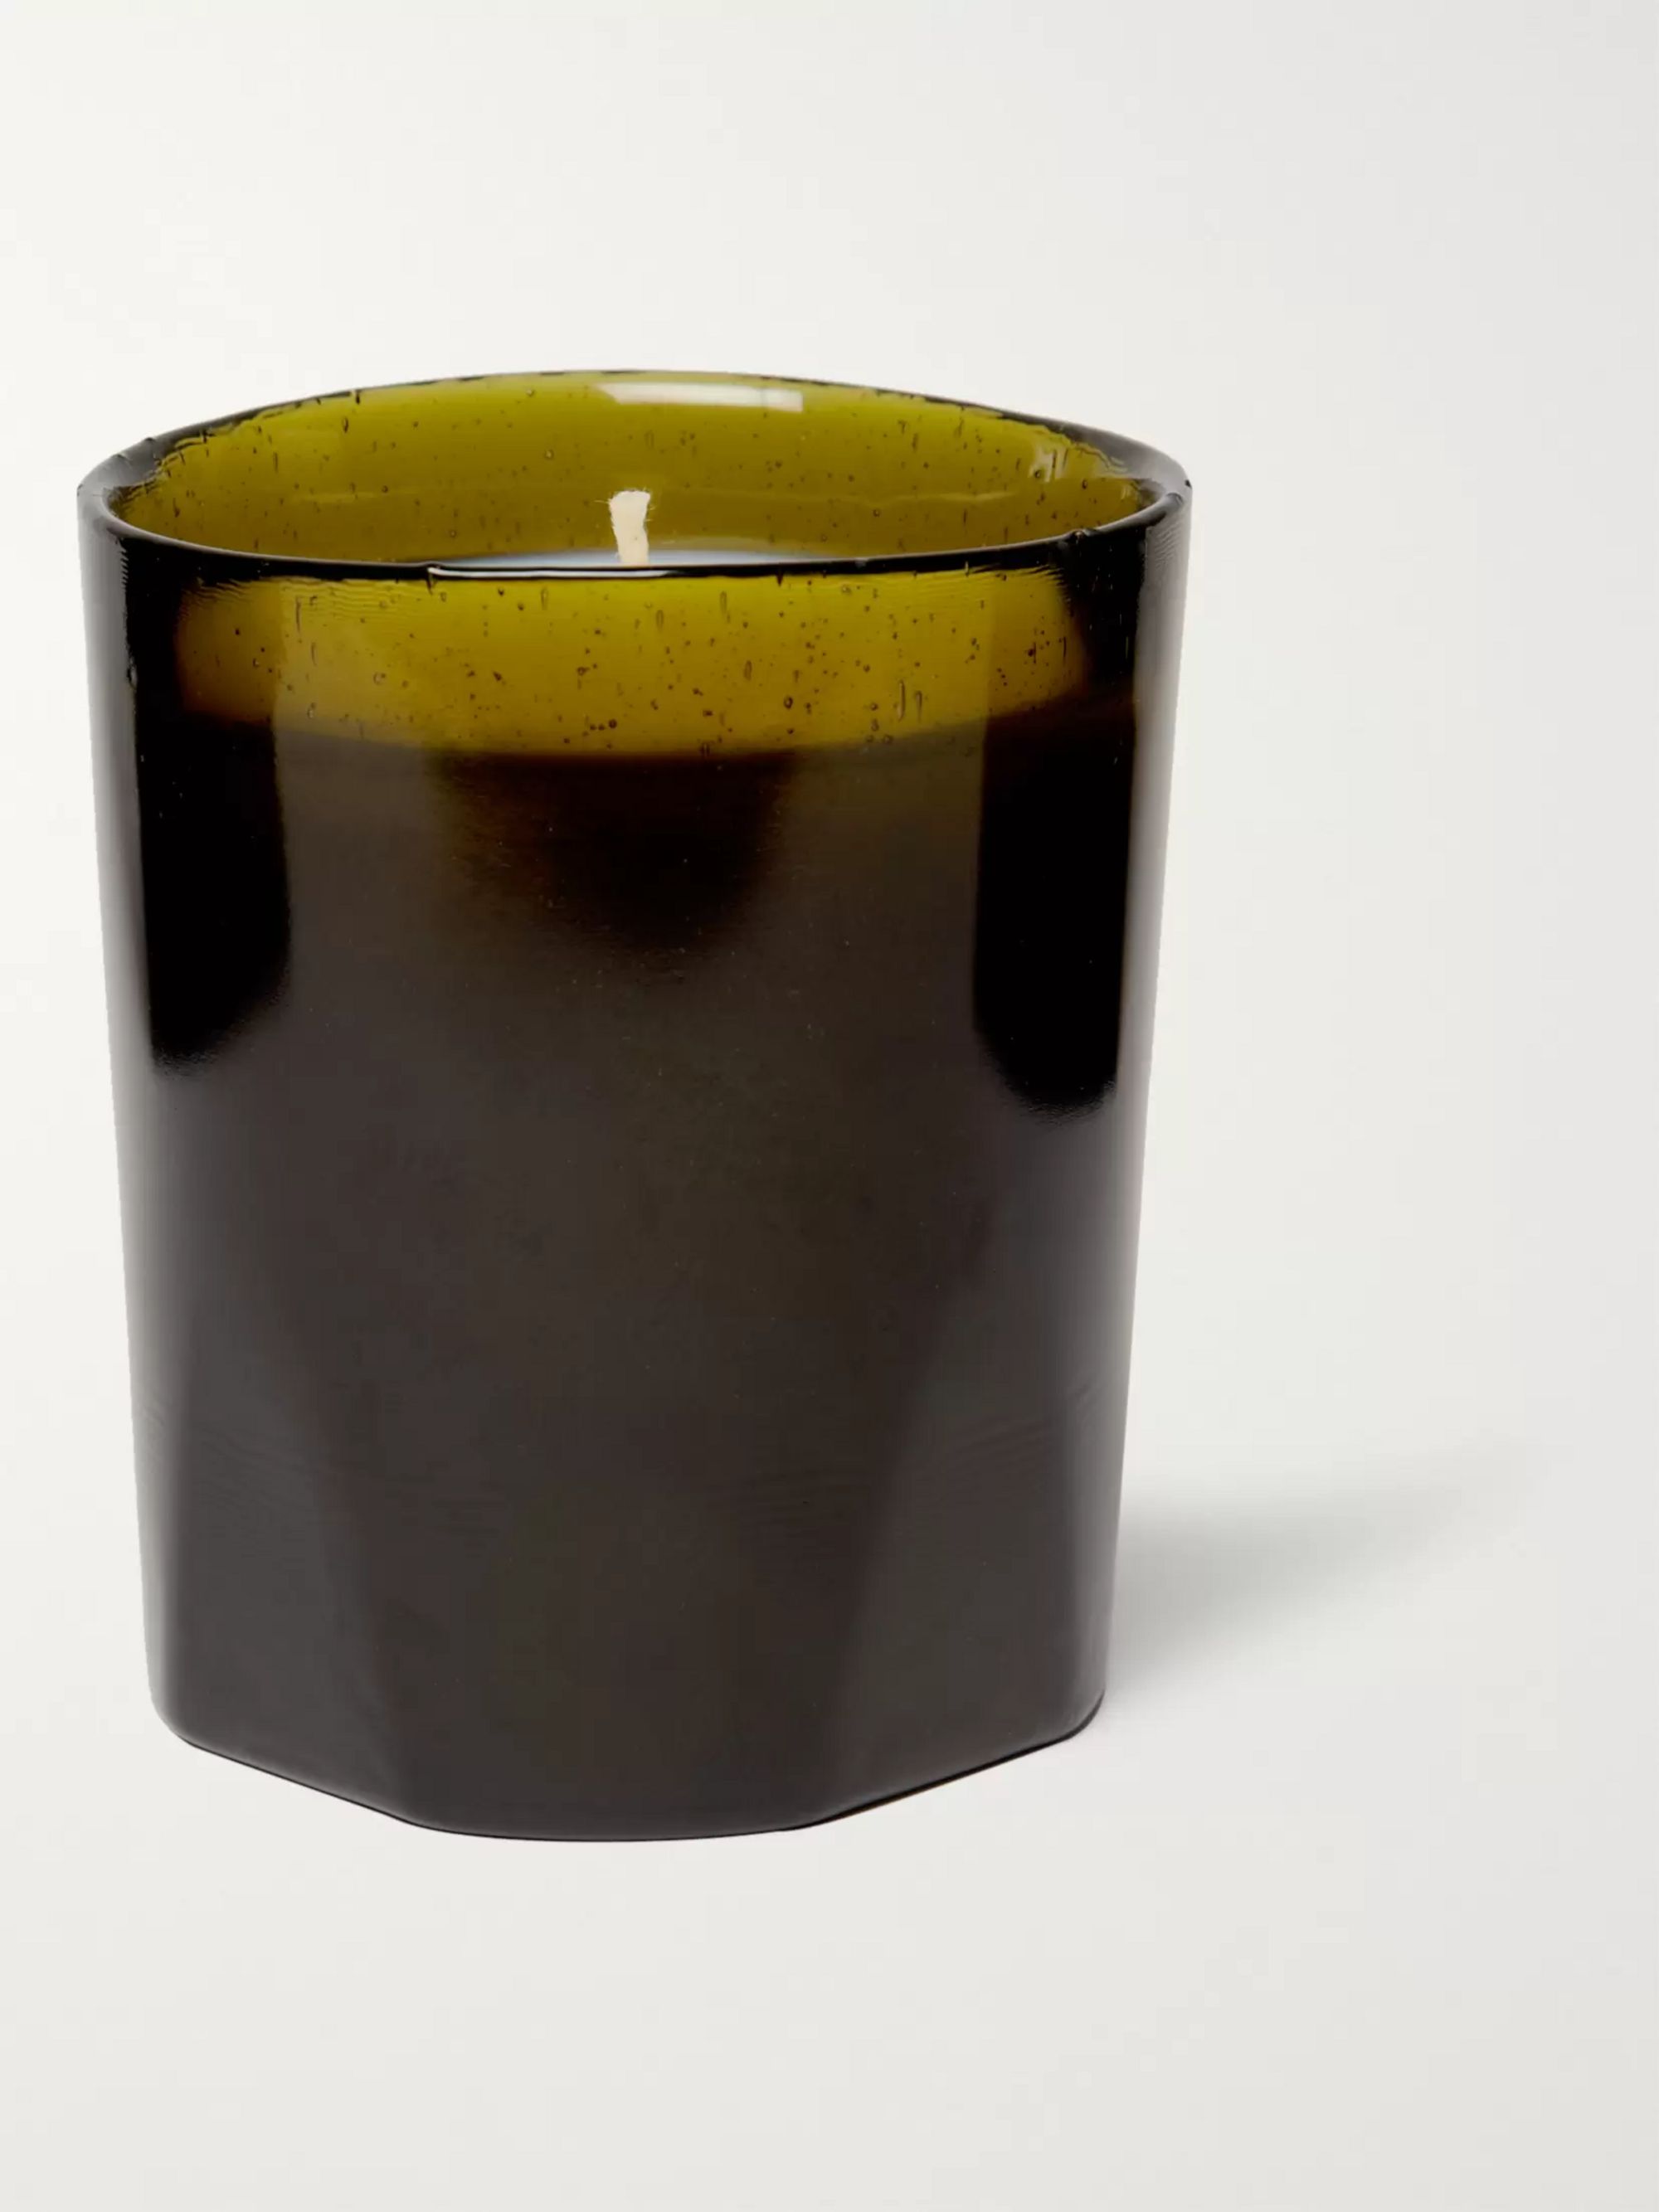 Dark green Carmélite Scented Candle, 270g | CIRE TRUDON | MR PORTER